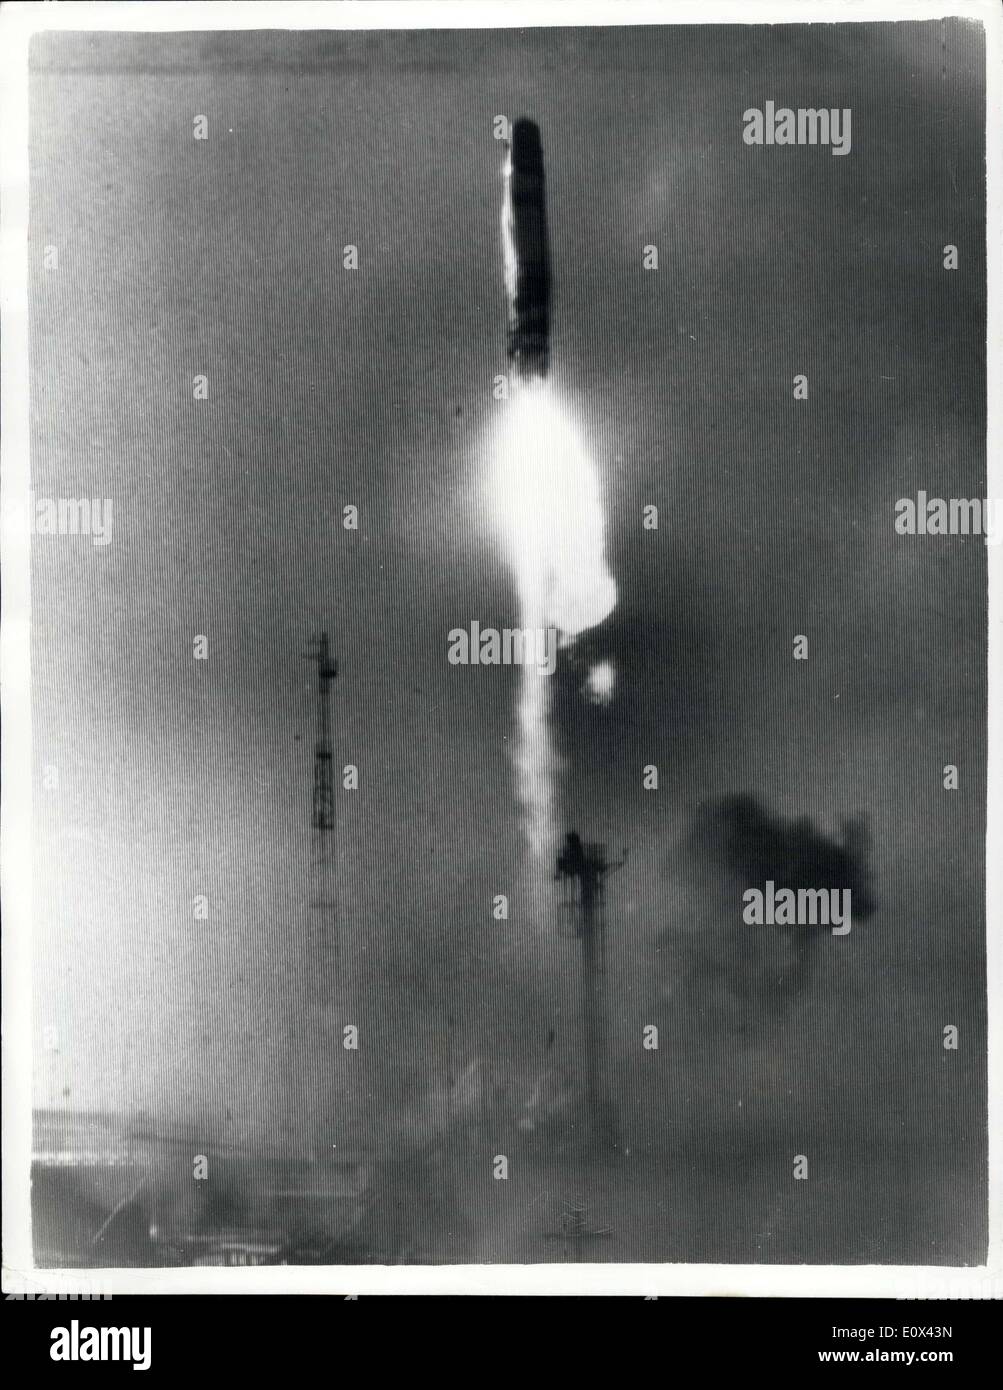 22 marzo 1965 - la F3 ''Blue Streak'' lanciata a Woomera. ''raggiunge tutti gli obiettivi''. Il razzo britannico ''Blue Streak'' è stato licenziato con successo da Woomera, Australia - come parte del programma spaziale europeo - all'inizio di questa mattina. Ha raggiunto un'altezza di 150 miglia - e ha fatto un giro di quasi 1,000 miglia in 10 minuti prima di essere distrutto in base ai tempi. Allen Fairhall, ministro australiano dell'approvvigionamento, ha dichiarato che "Blue Streak ha raggiunto tutti gli obiettivi del processo". Spettacoli fotografici ''Blue Streak'' F lanciato alle 0100 ore - a Woomera - Australia - oggi. Foto Stock